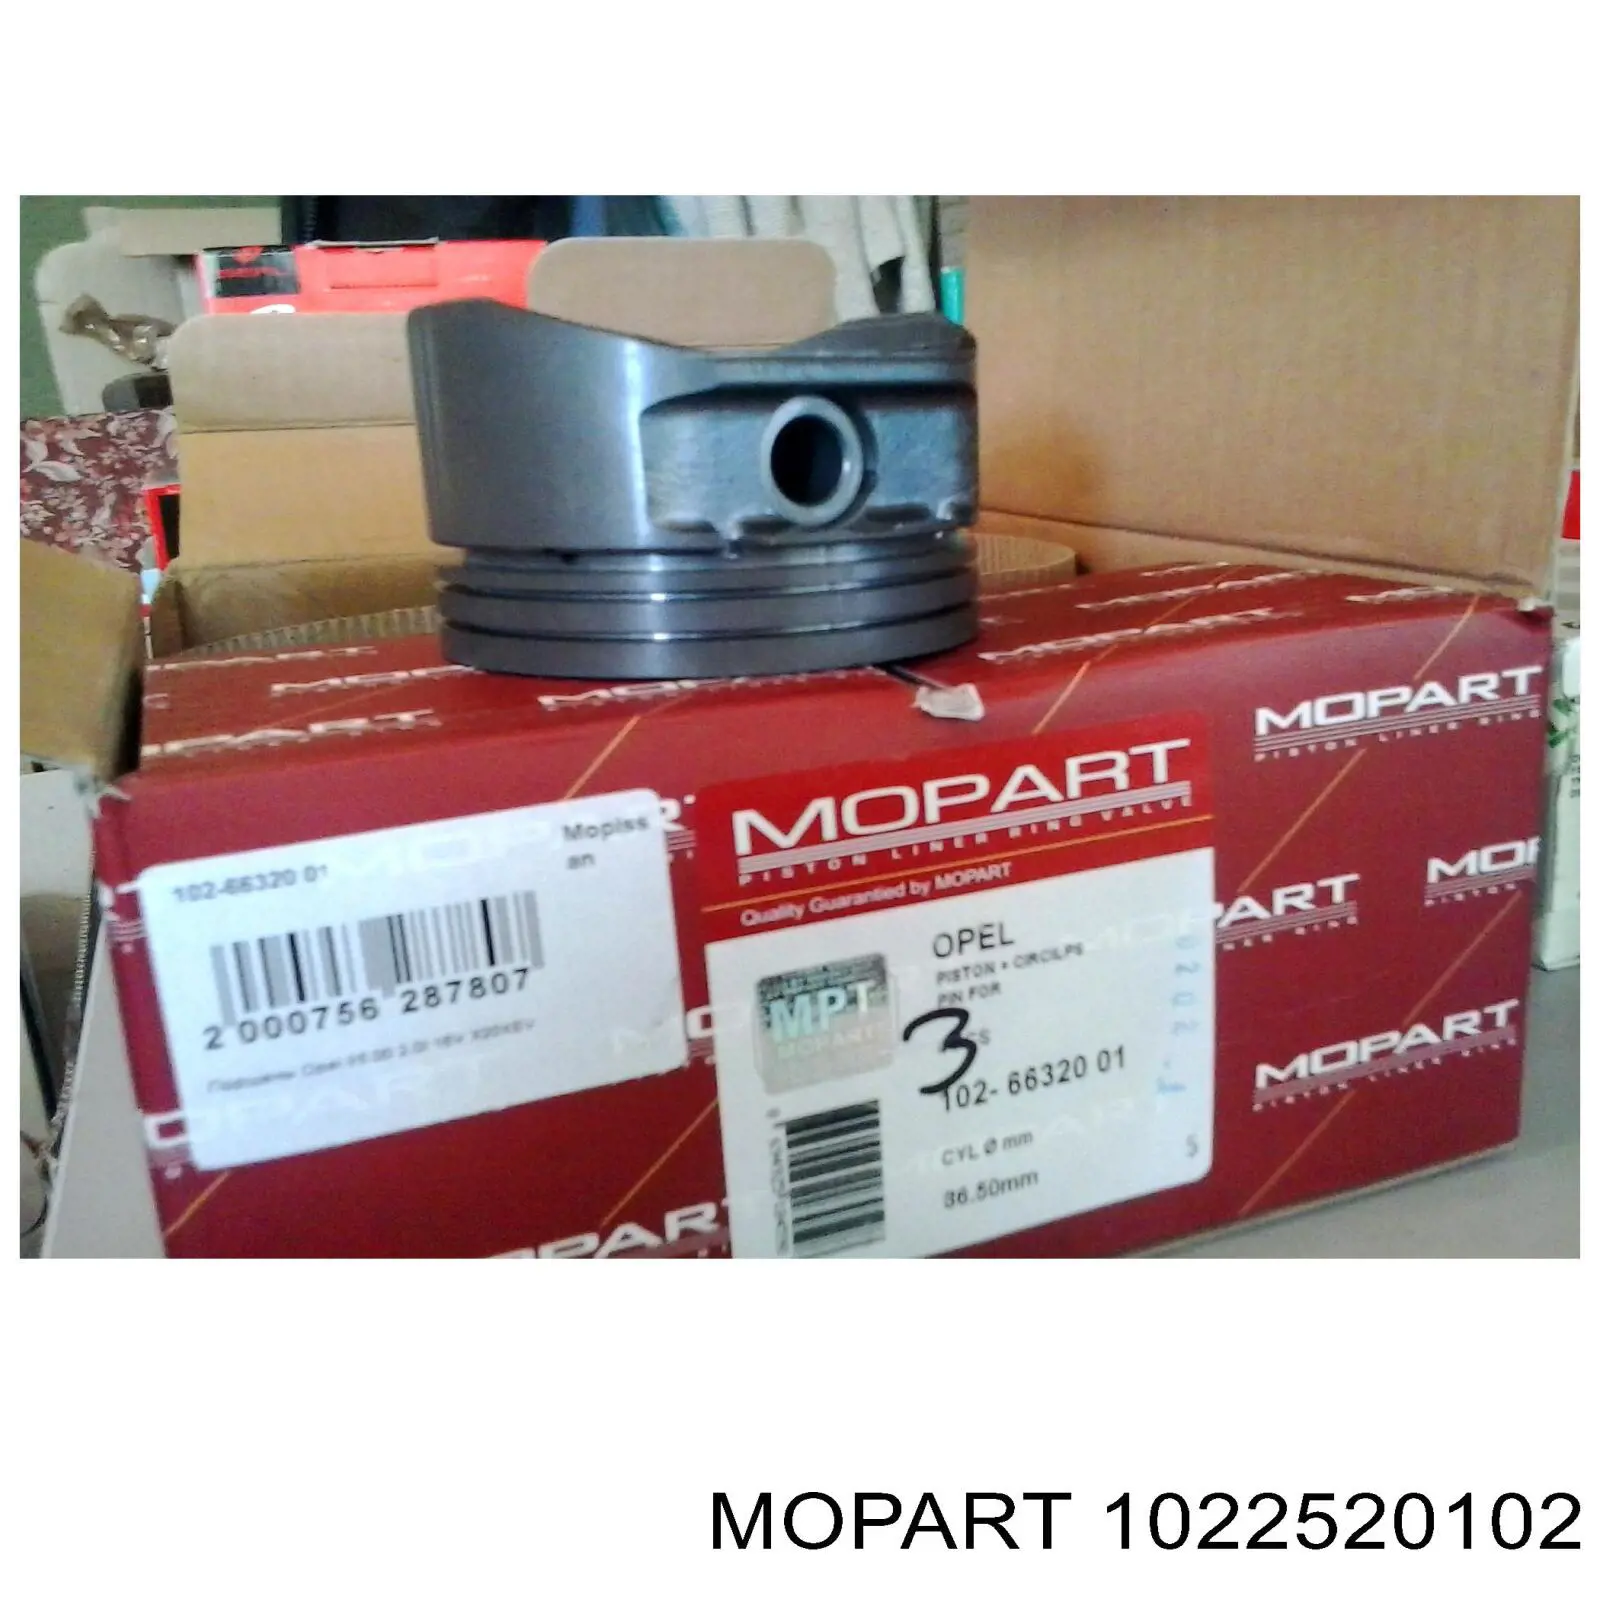 102-25201.02 Mopart поршень в комплекте на 1 цилиндр, 2-й ремонт (+0,50)